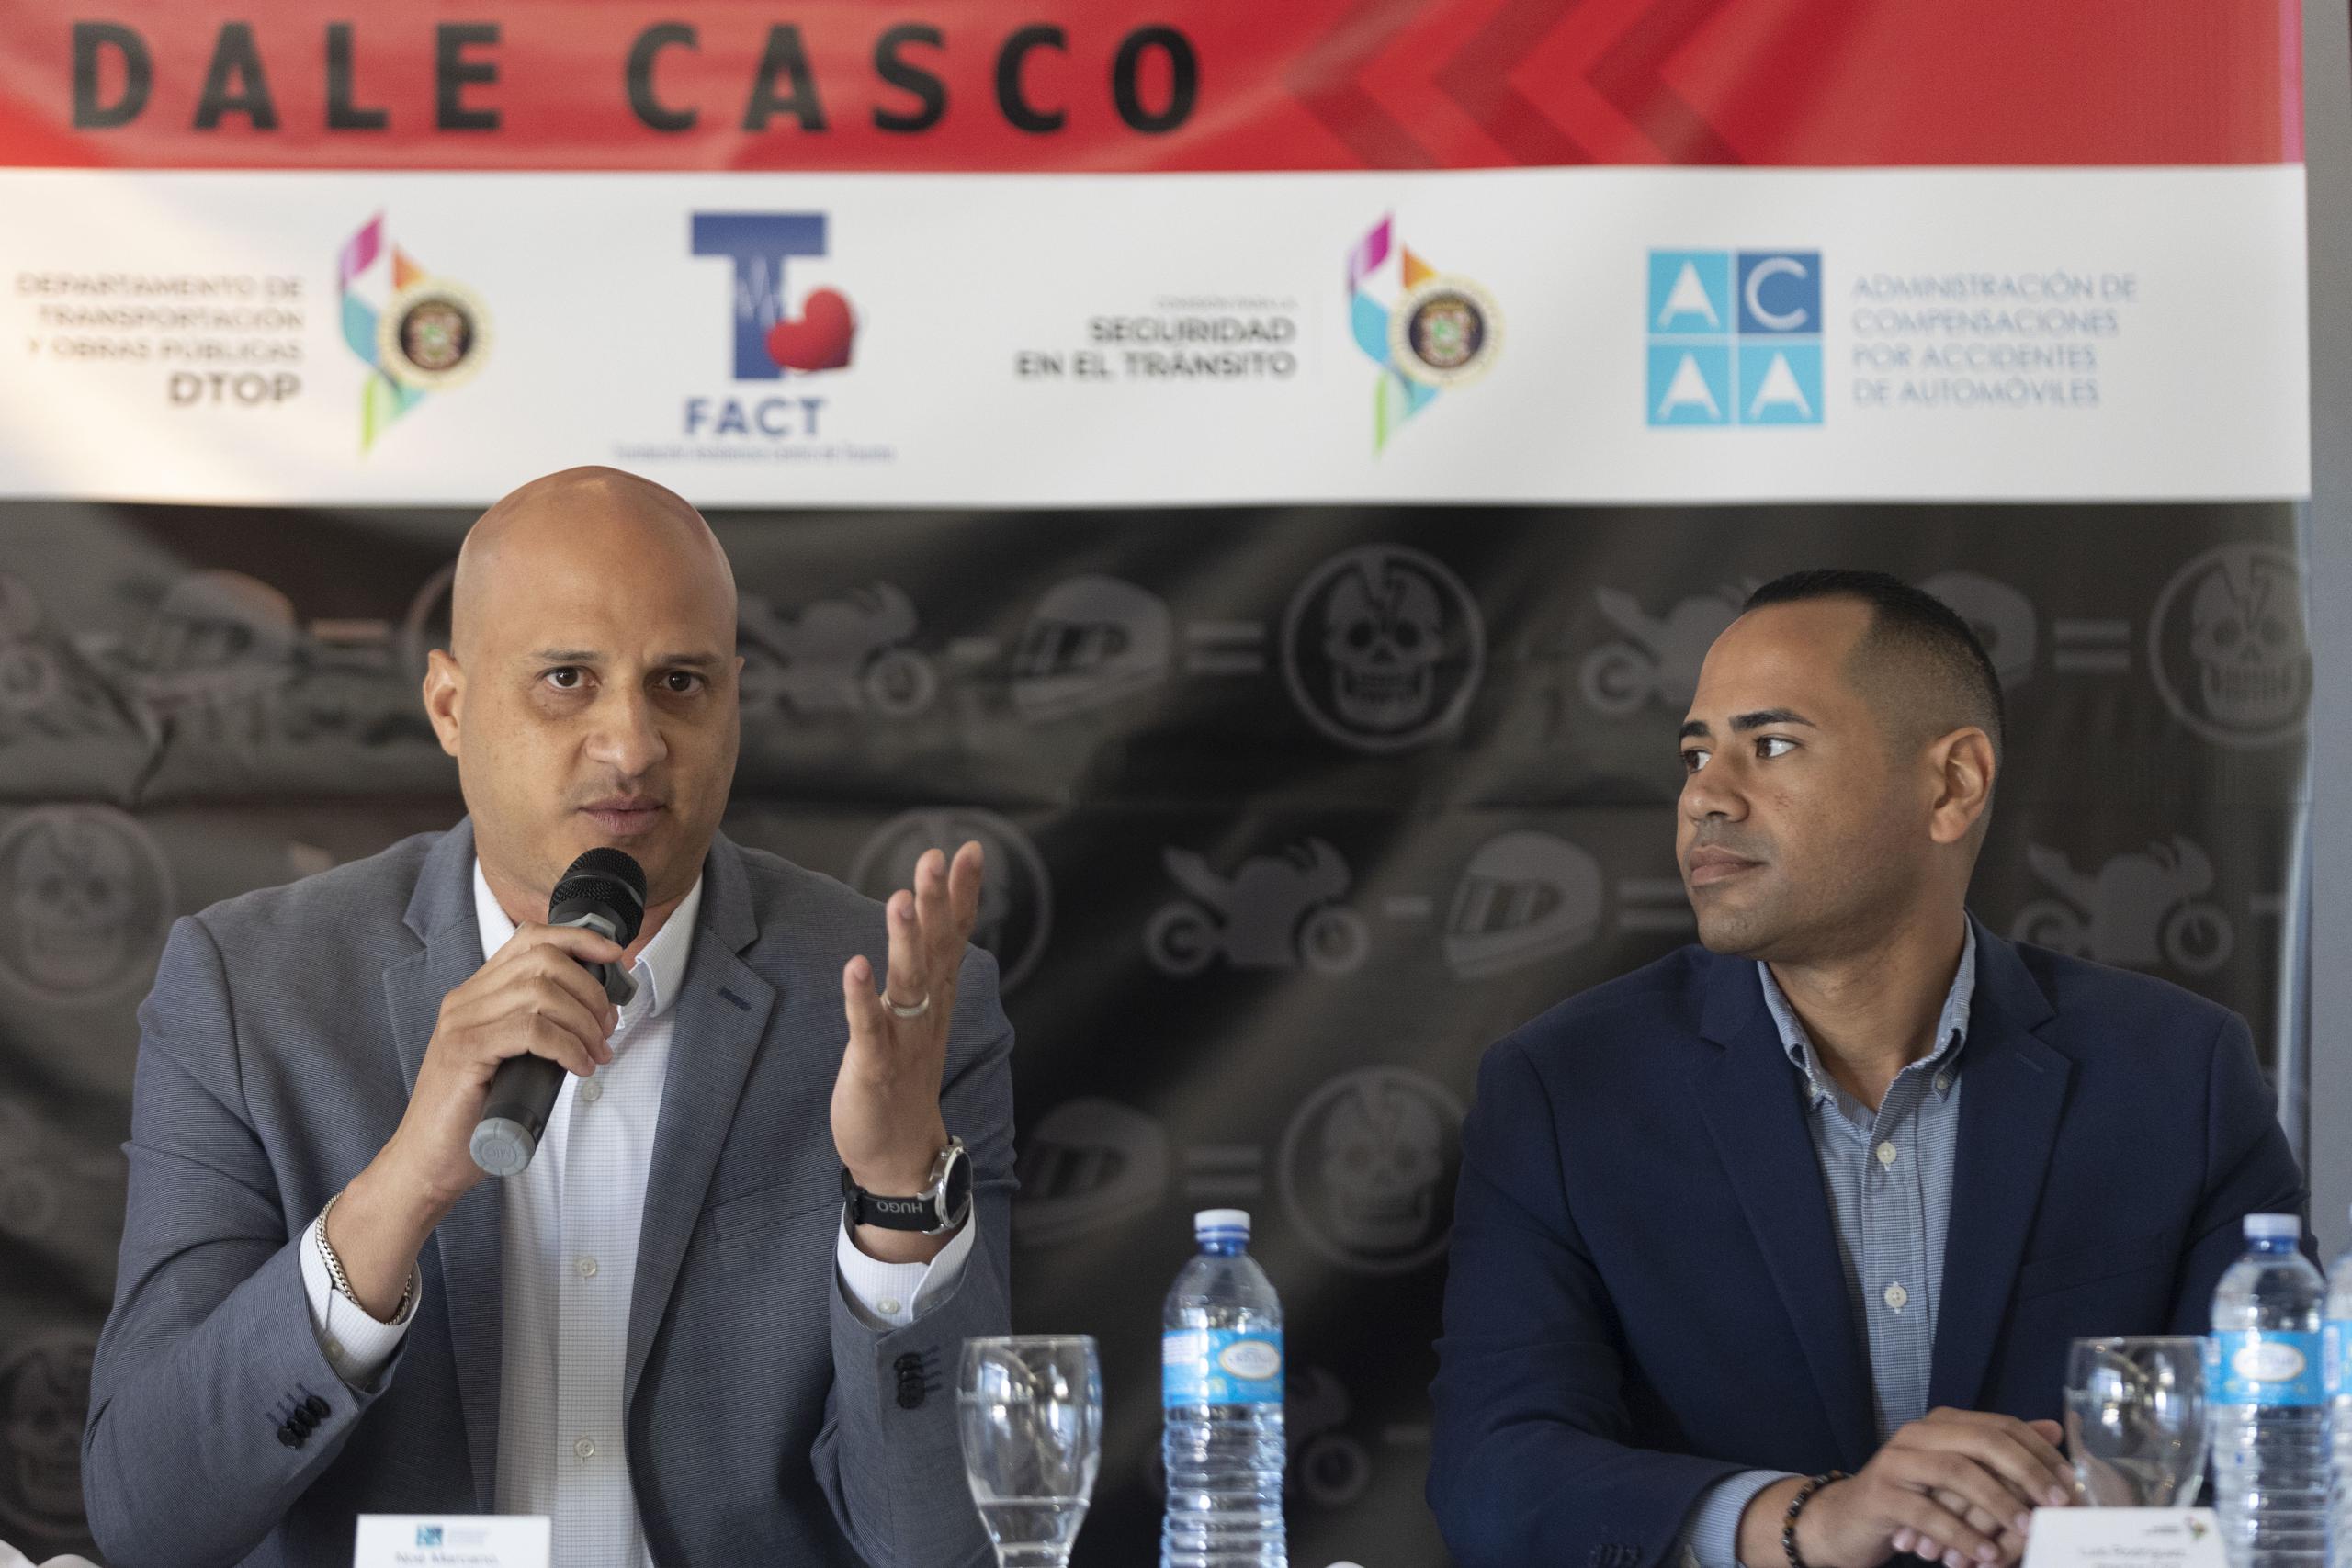 El director ejecutivo de la ACAA, Noé Marcano (a la izquierda), junto al jefe de la Comisión para la Seguridad en el Tránsito, Luis Rodríguez (a la derecha), presentaron la campaña "Dale Casco".